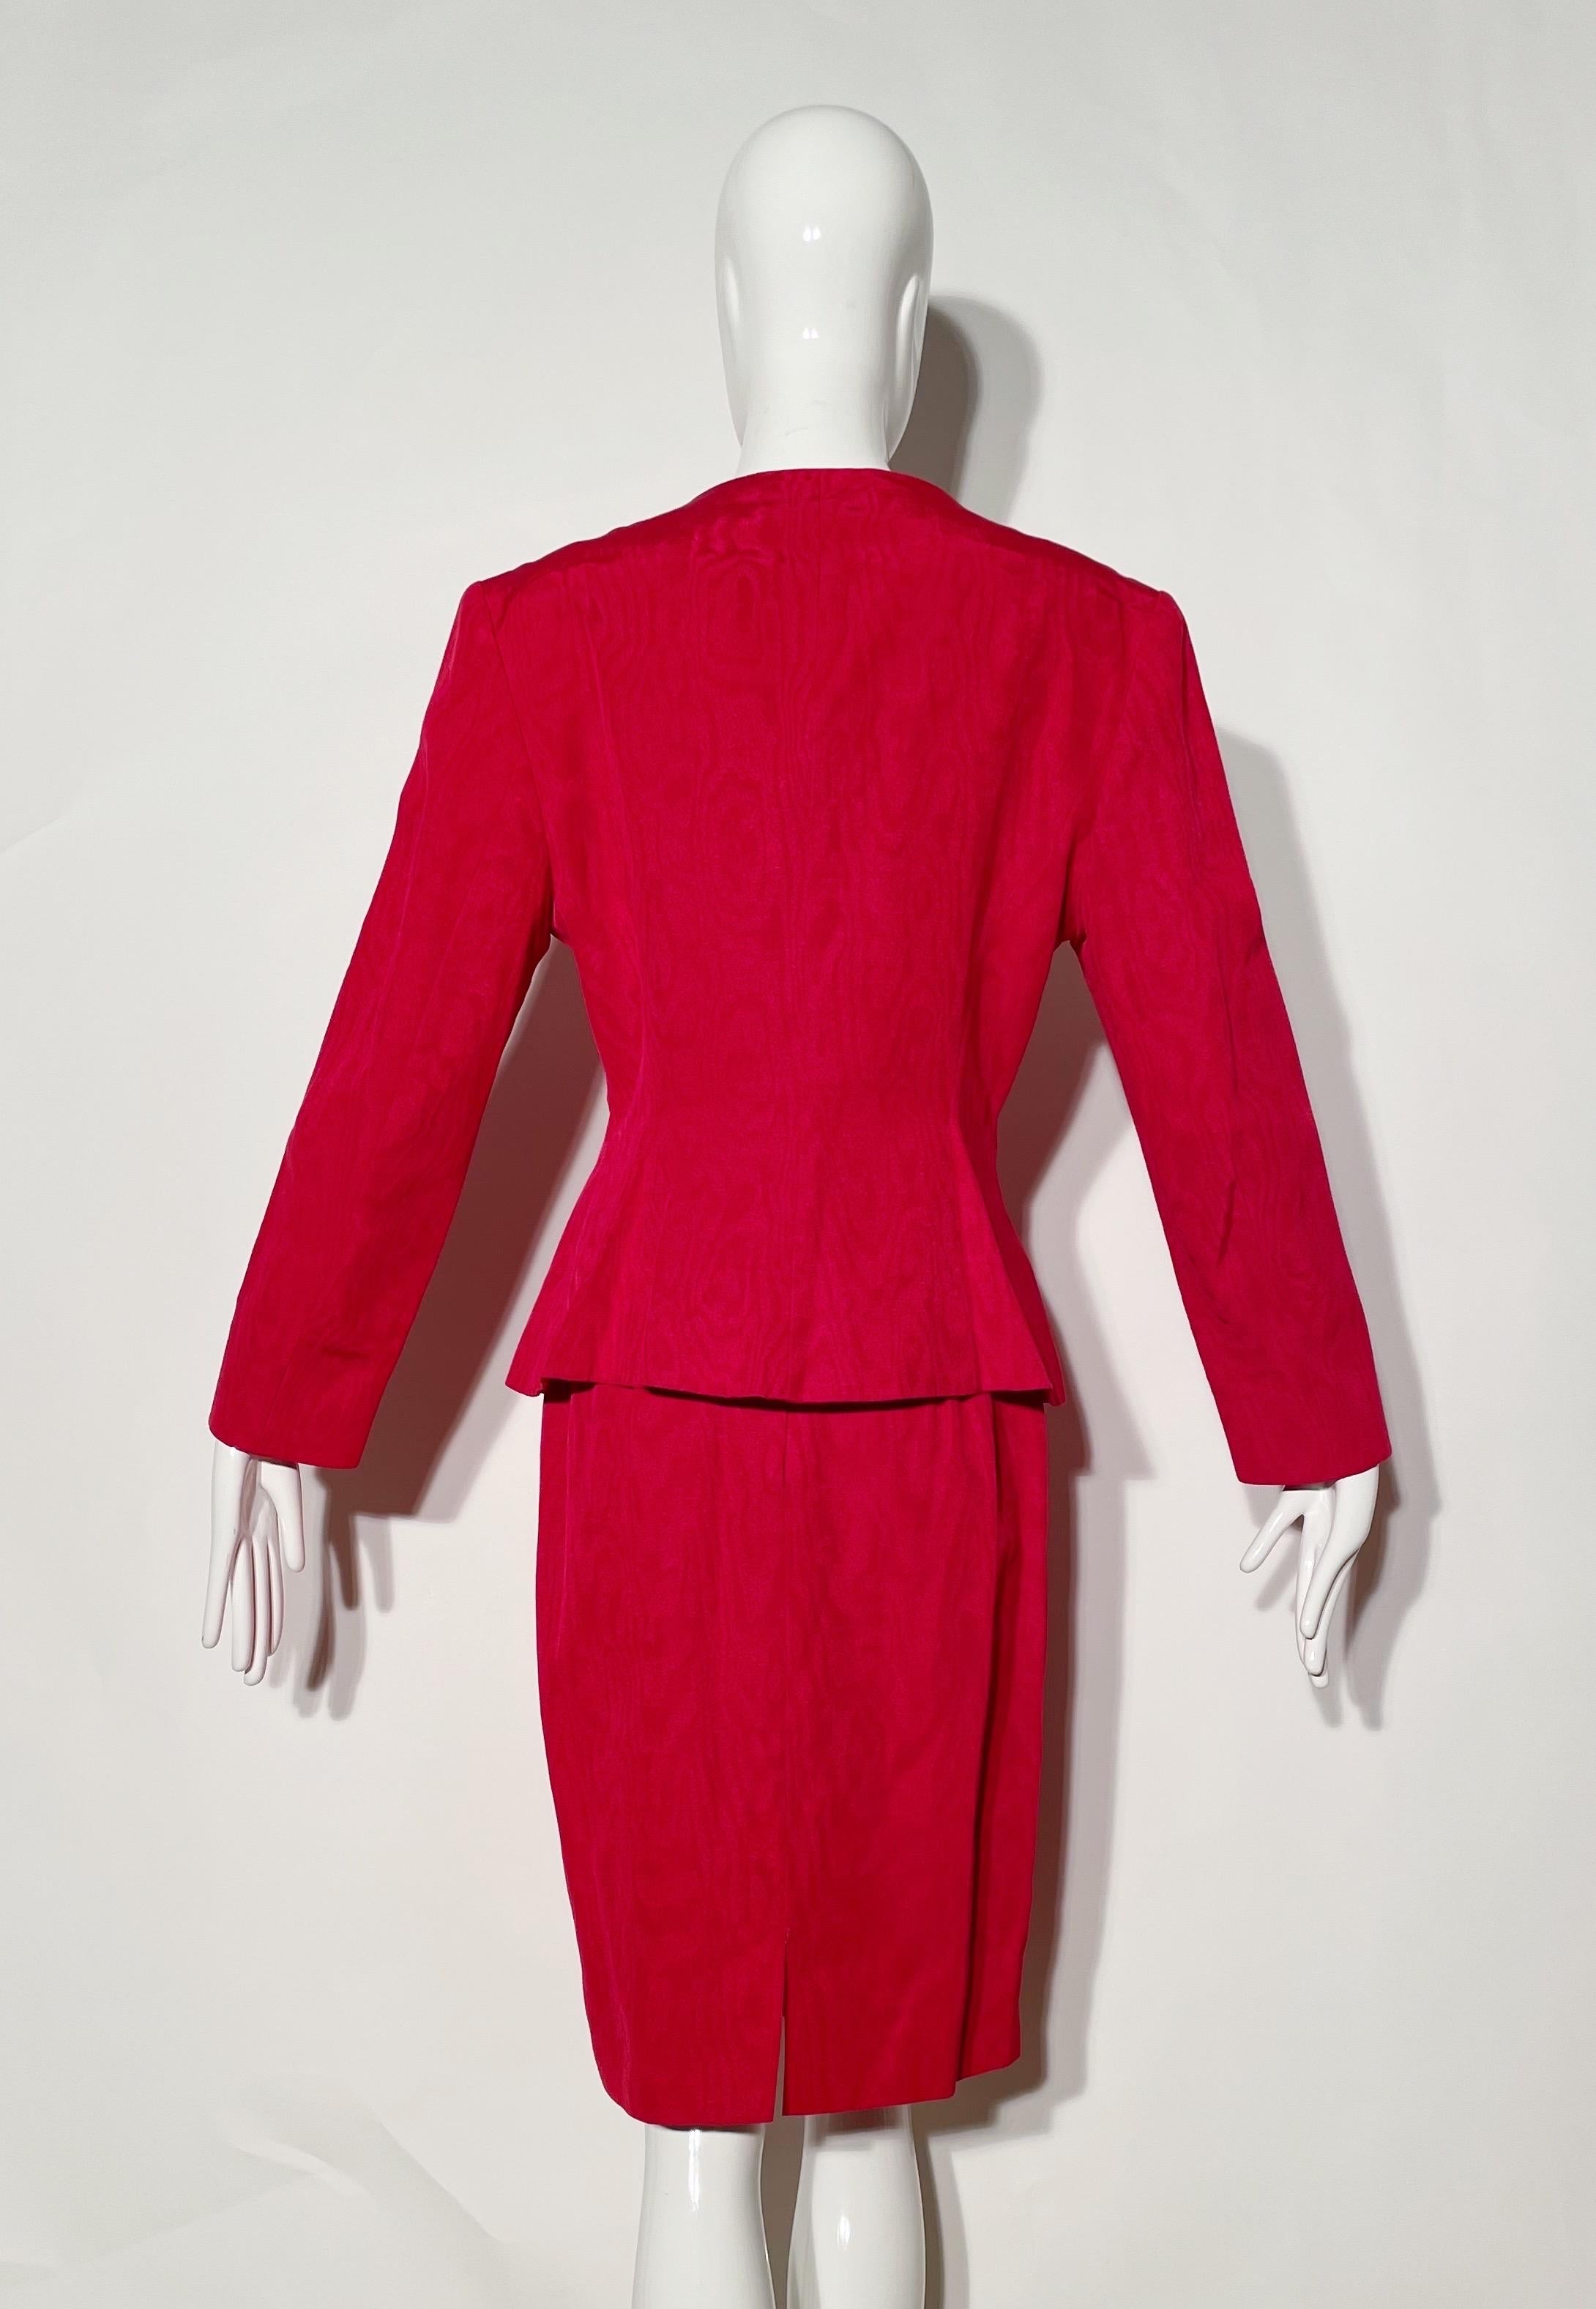 Women's Guy LaRoche Red Skirt Suit For Sale